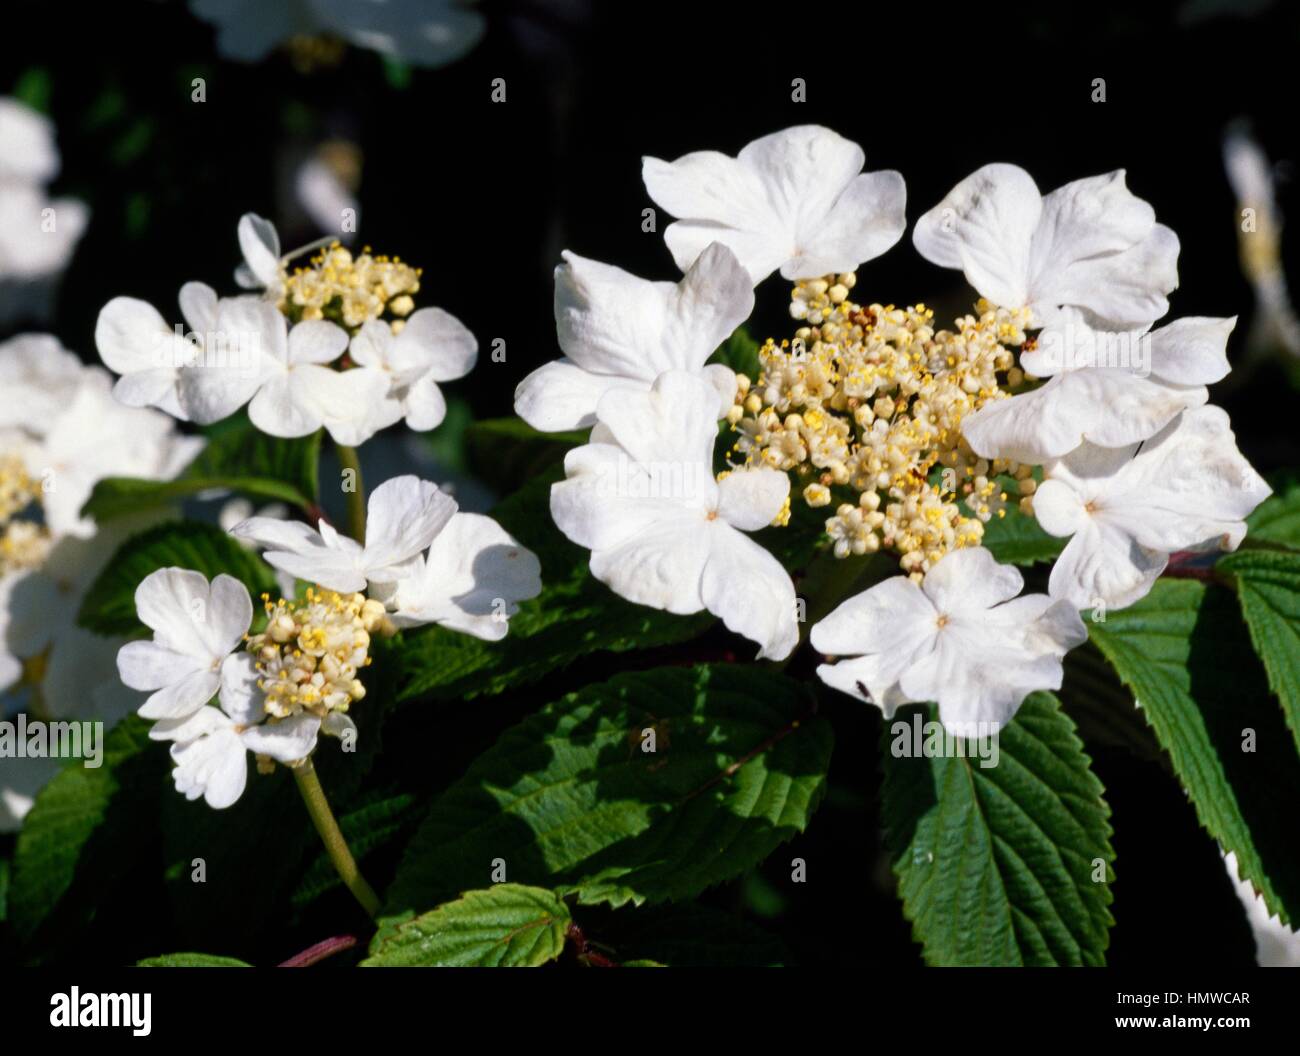 Doublefile Viburnum (Viburnum plicatum tomentosum St Keverne), Adoxaceae. Stock Photo